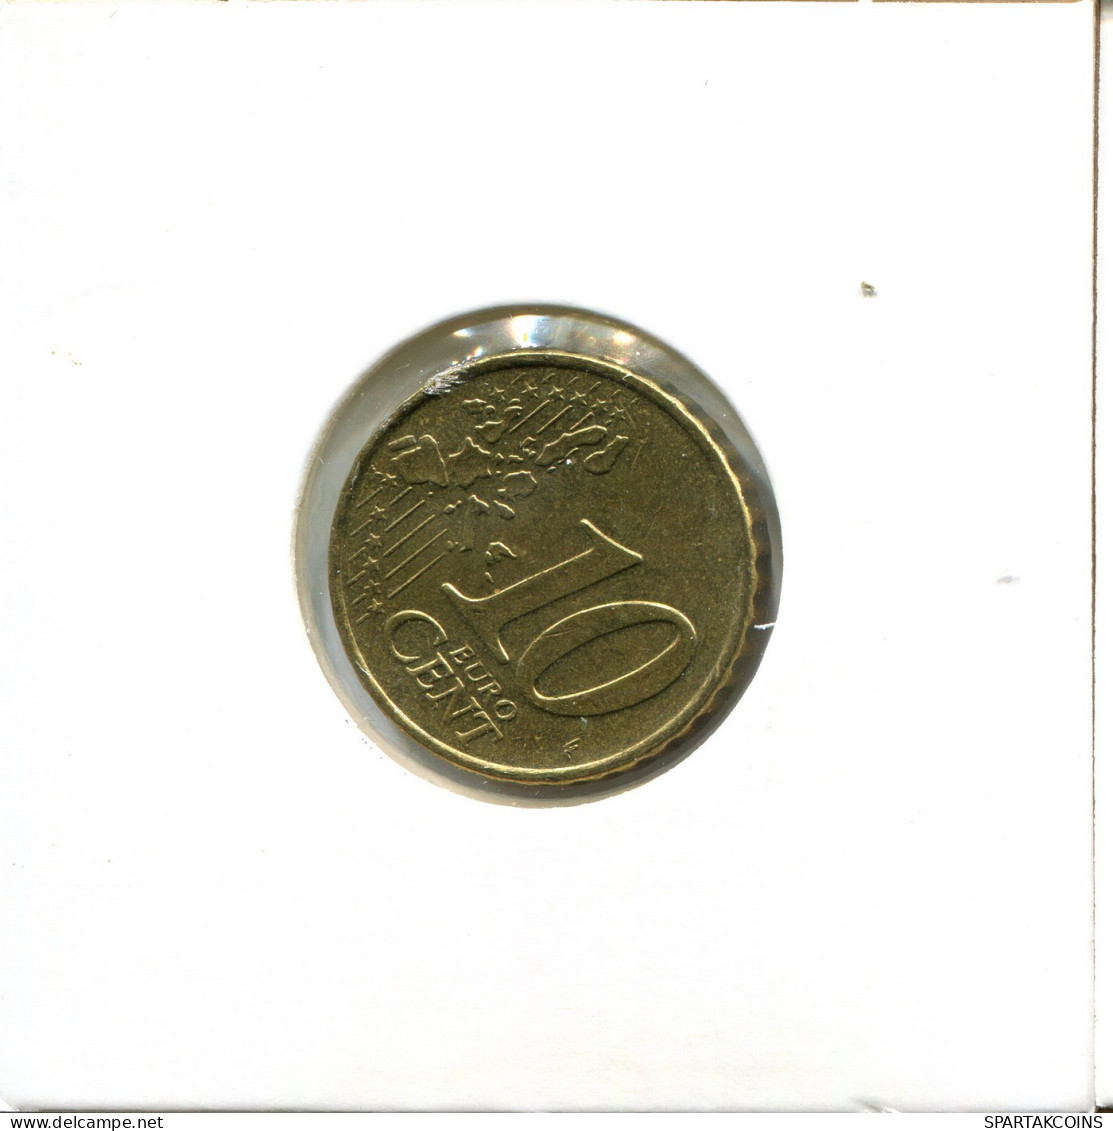 10 EURO CENTS 2004 GREECE Coin #EU486.U.A - Griekenland